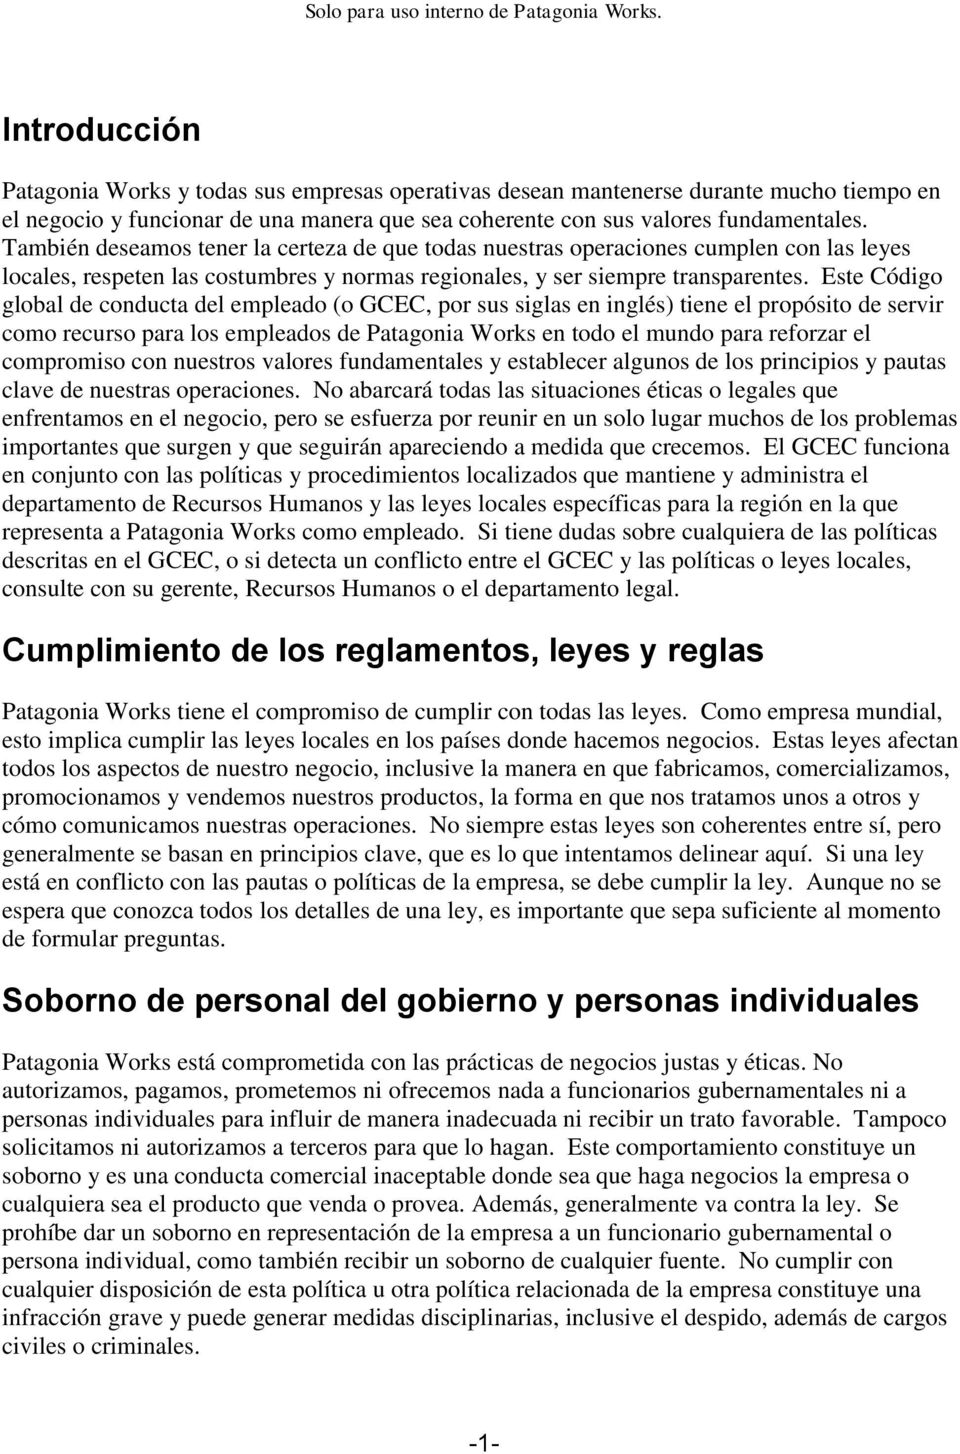 Este Código global de conducta del empleado (o GCEC, por sus siglas en inglés) tiene el propósito de servir como recurso para los empleados de Patagonia Works en todo el mundo para reforzar el